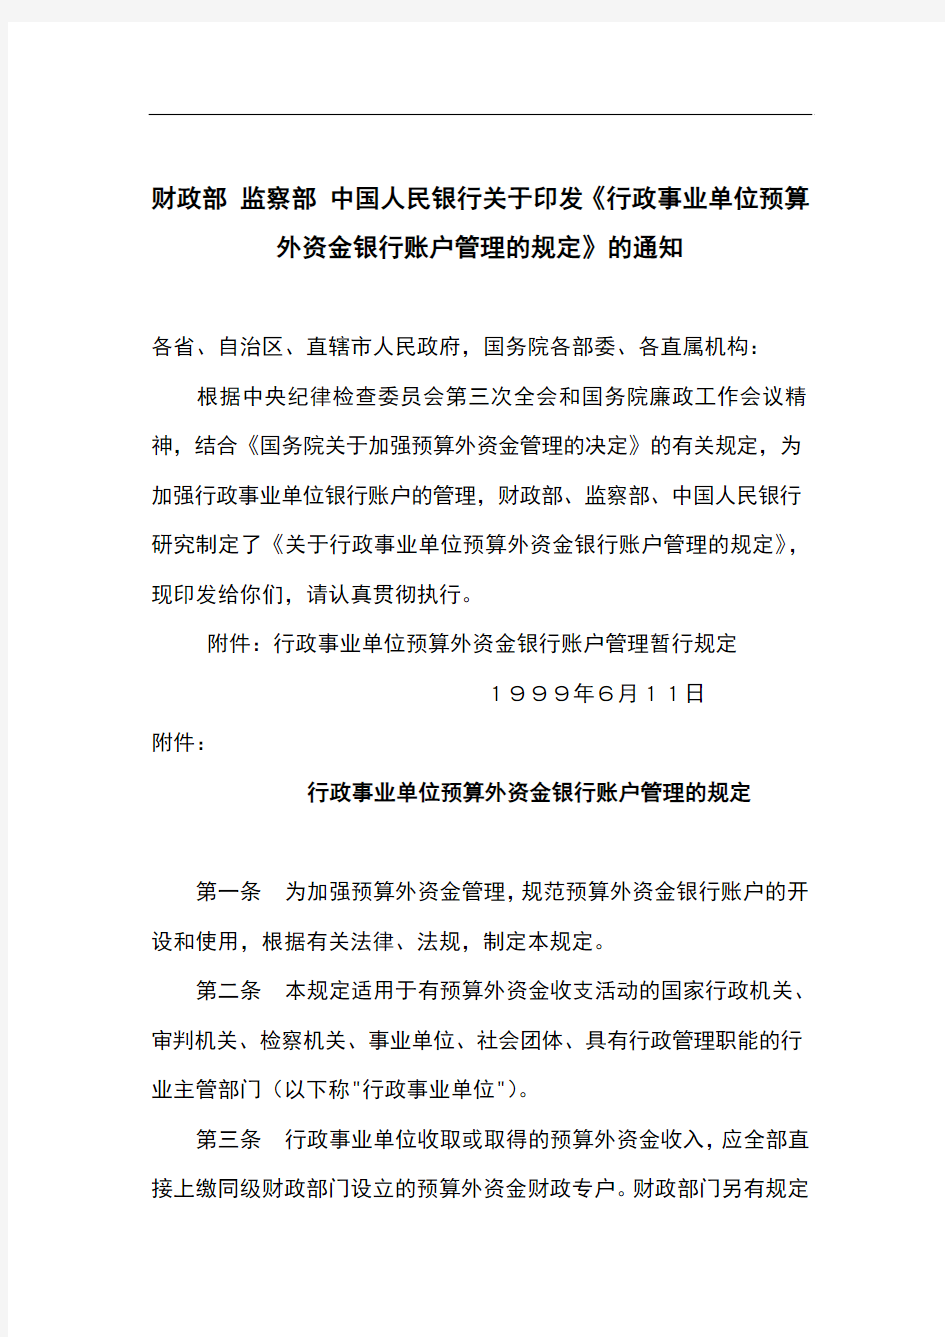 财政部 监察部 中国人民银行关于印发《银行账户管理办法》